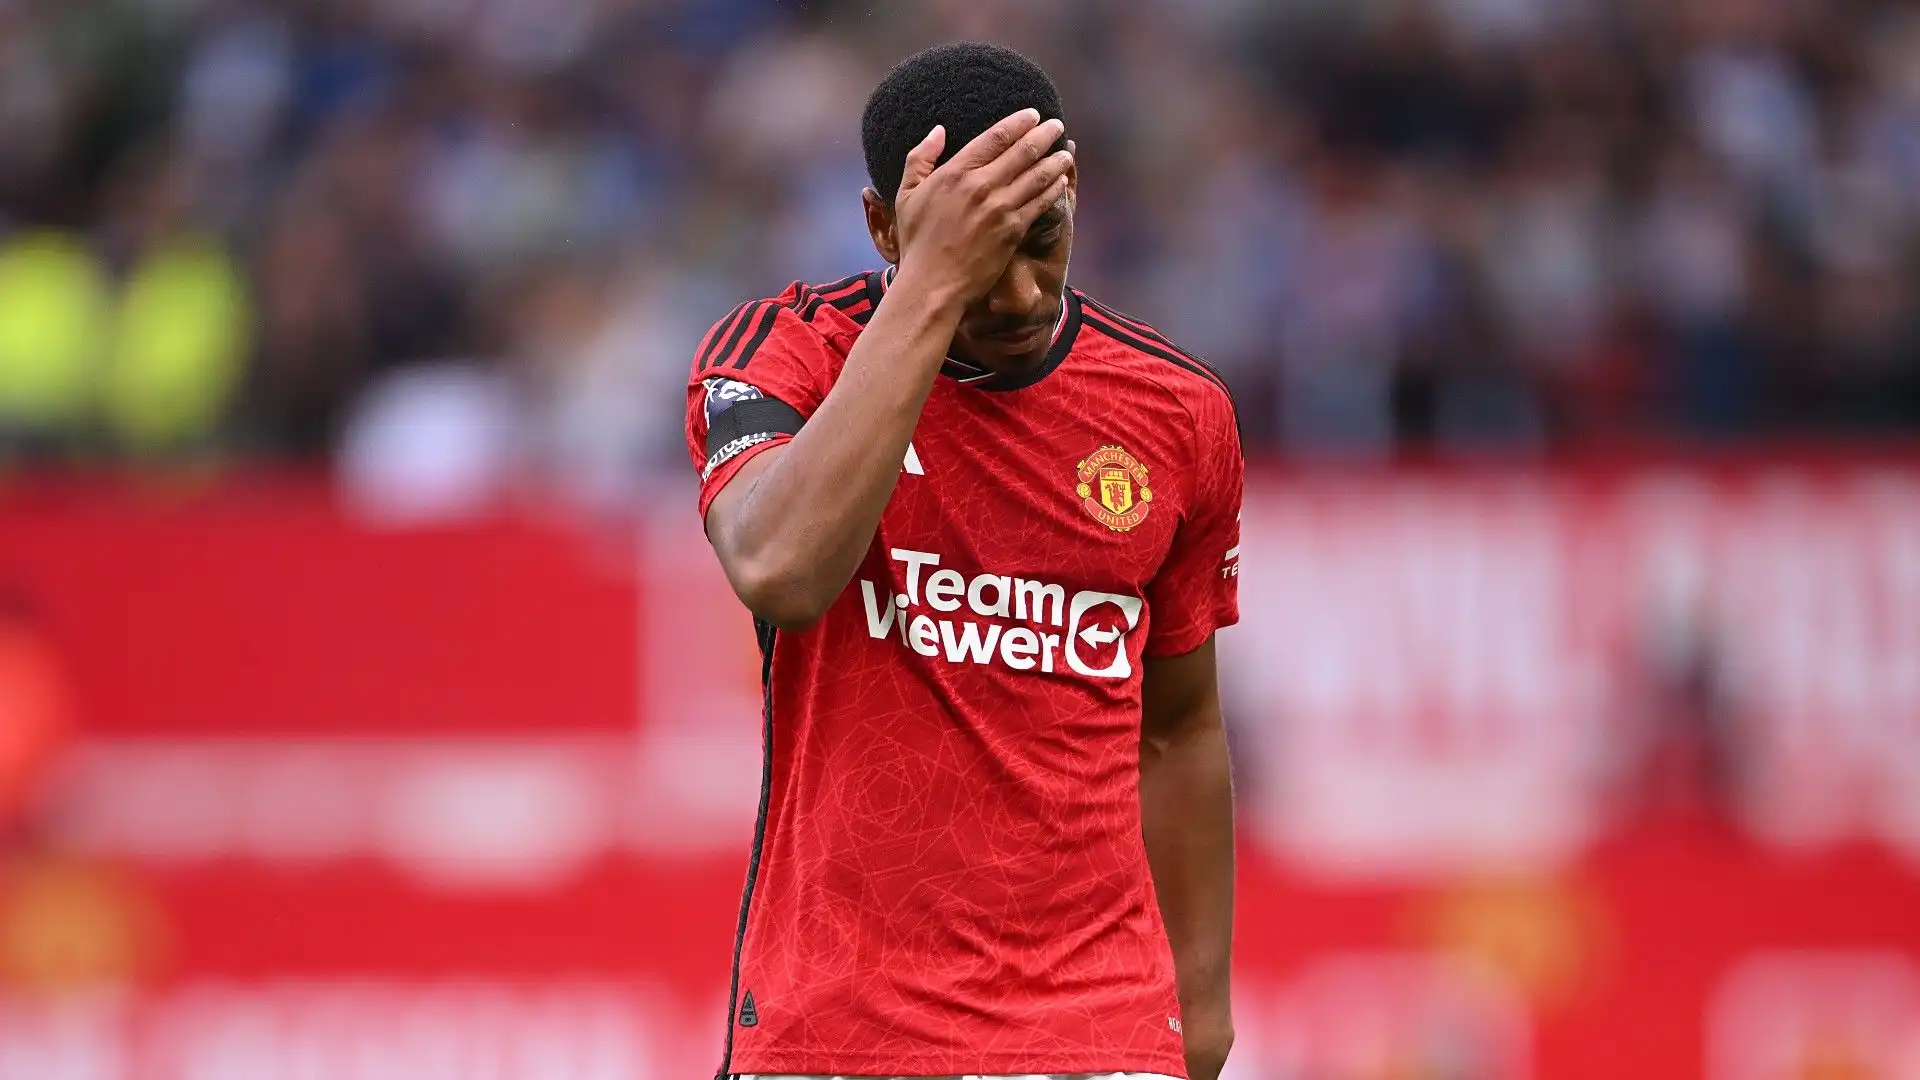 Arrivato al Manchester United nel 2015 per 60 milioni di euro, Anthony Martial non sempre è riuscito ad esprimere tutte le sue qualità